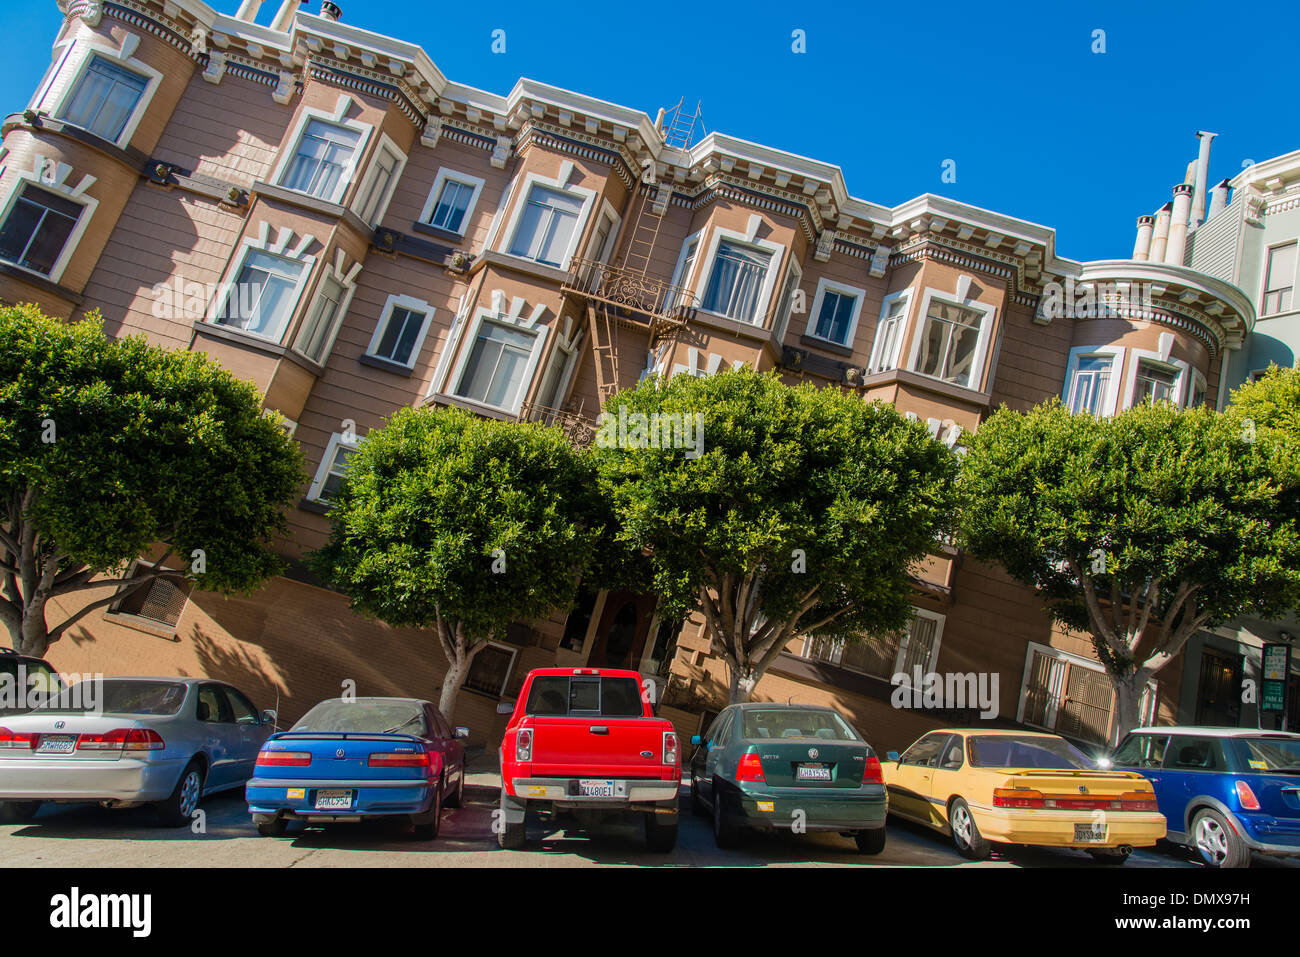 Vista inclinata di una tipica strada ripida con vecchi edifici di appartamenti e automobili parcheggiate, San Francisco, California, Stati Uniti d'America Foto Stock